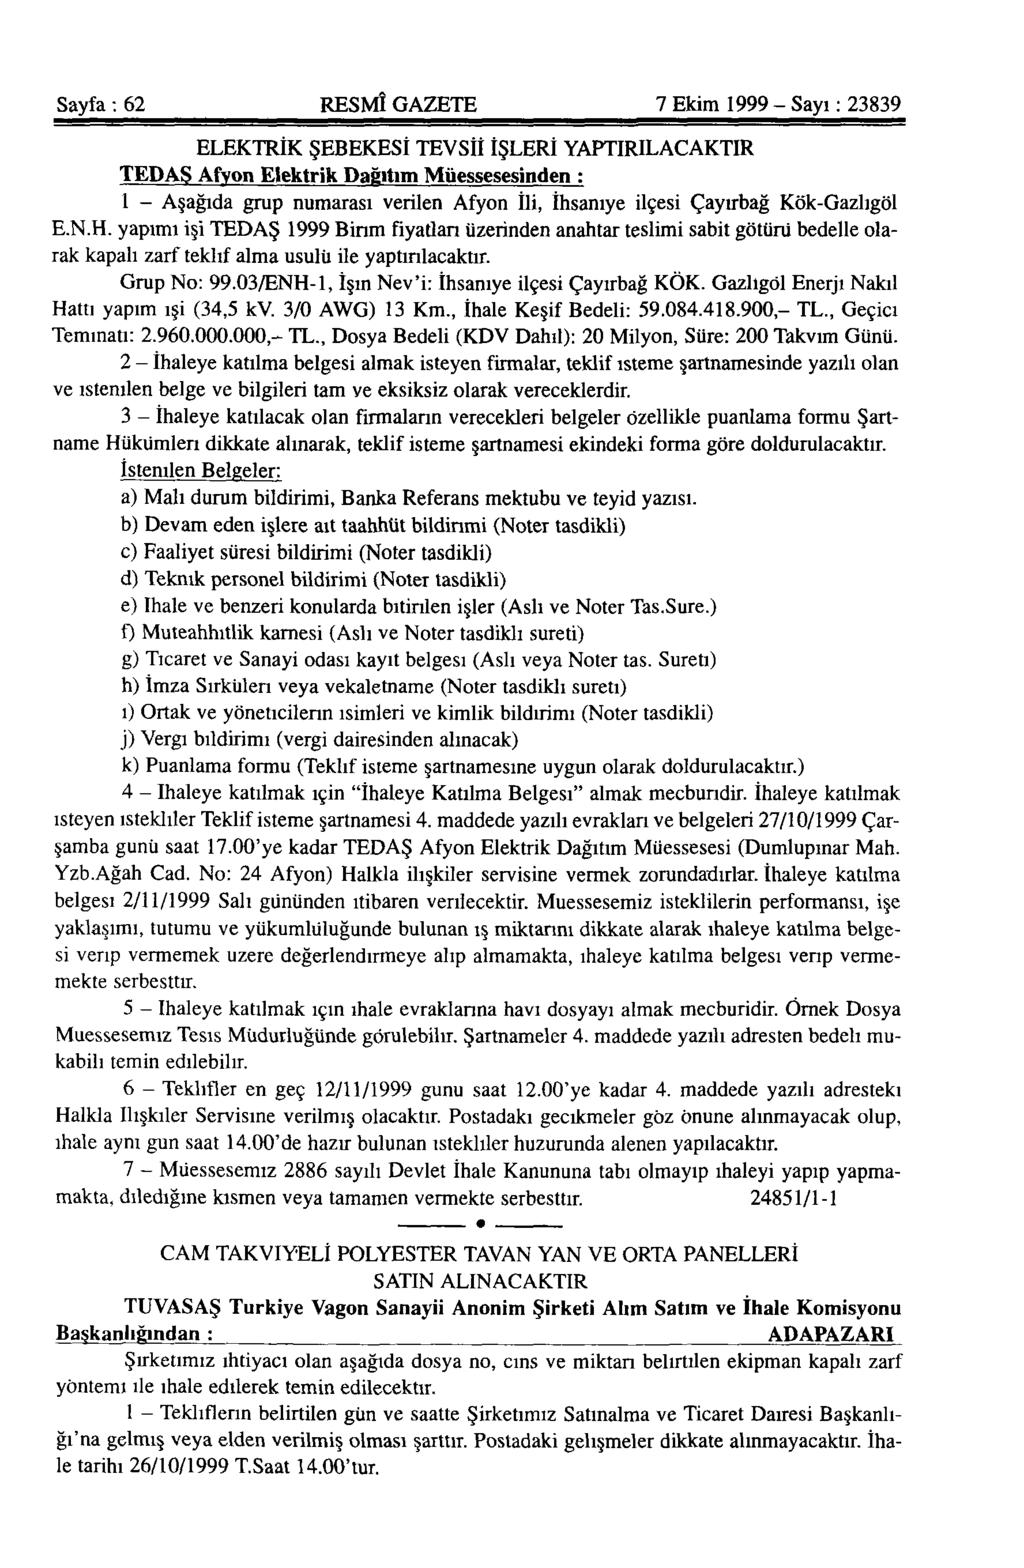 Sayfa : 62 RESMÎ GAZETE 7 Ekim 1999 - Sayı : 23839 ELEKTRİK ŞEBEKESİ TEVSİİ İŞLERİ YAPTIRILACAKTIR TEDAŞ Afyon Elektrik Dağıtım Müessesesinden : 1 - Aşağıda grup numarası verilen Afyon İli, İhsaniye